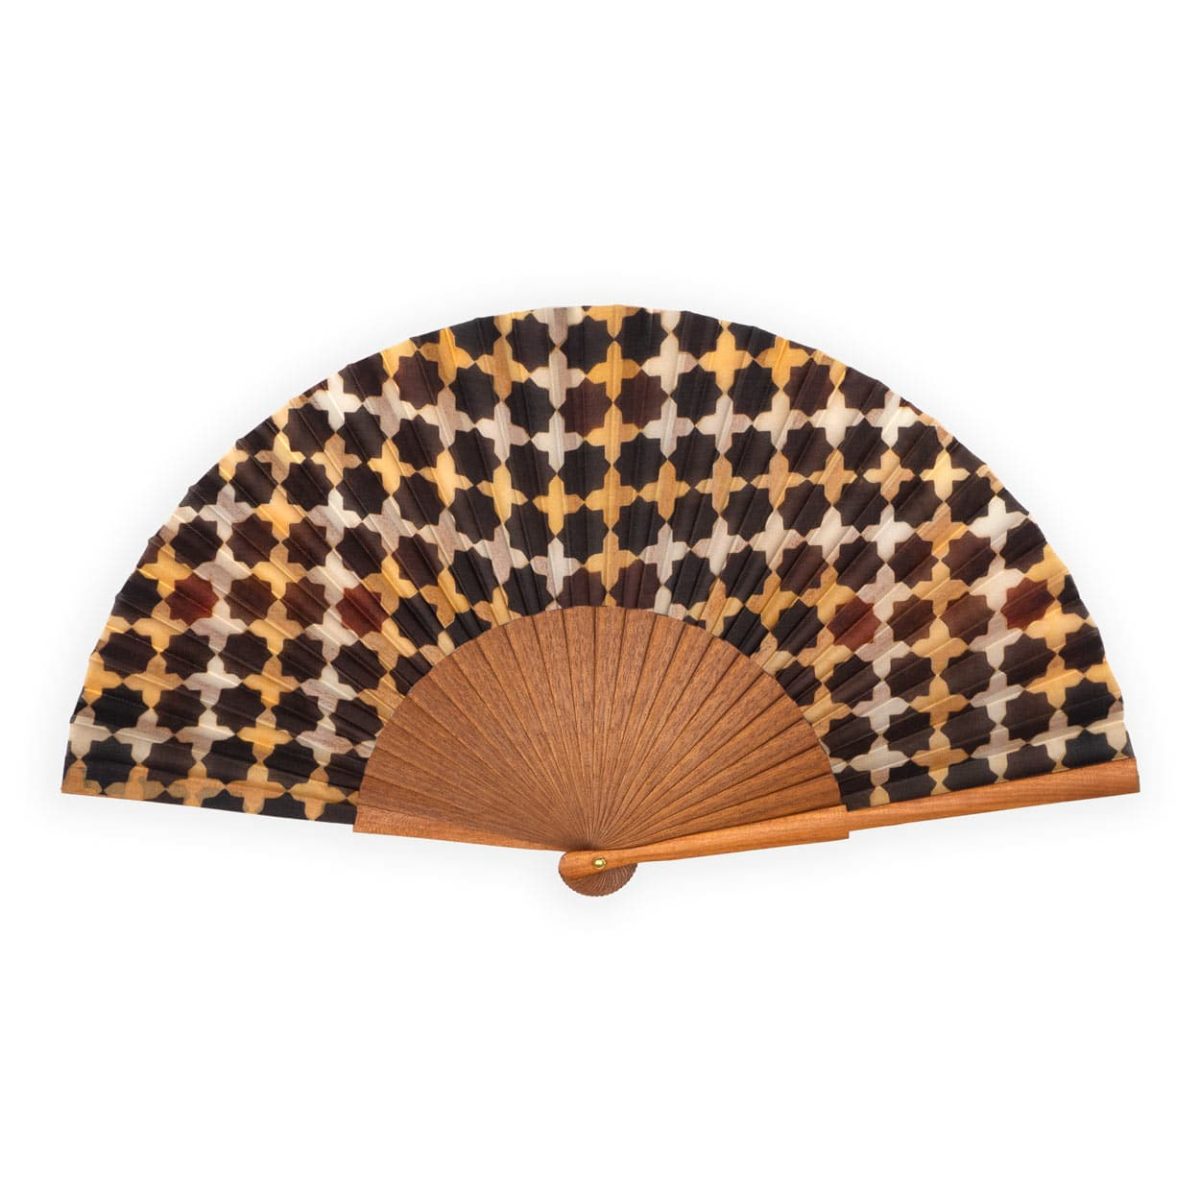 Brown silk fan inspired by islamic geometry patterns